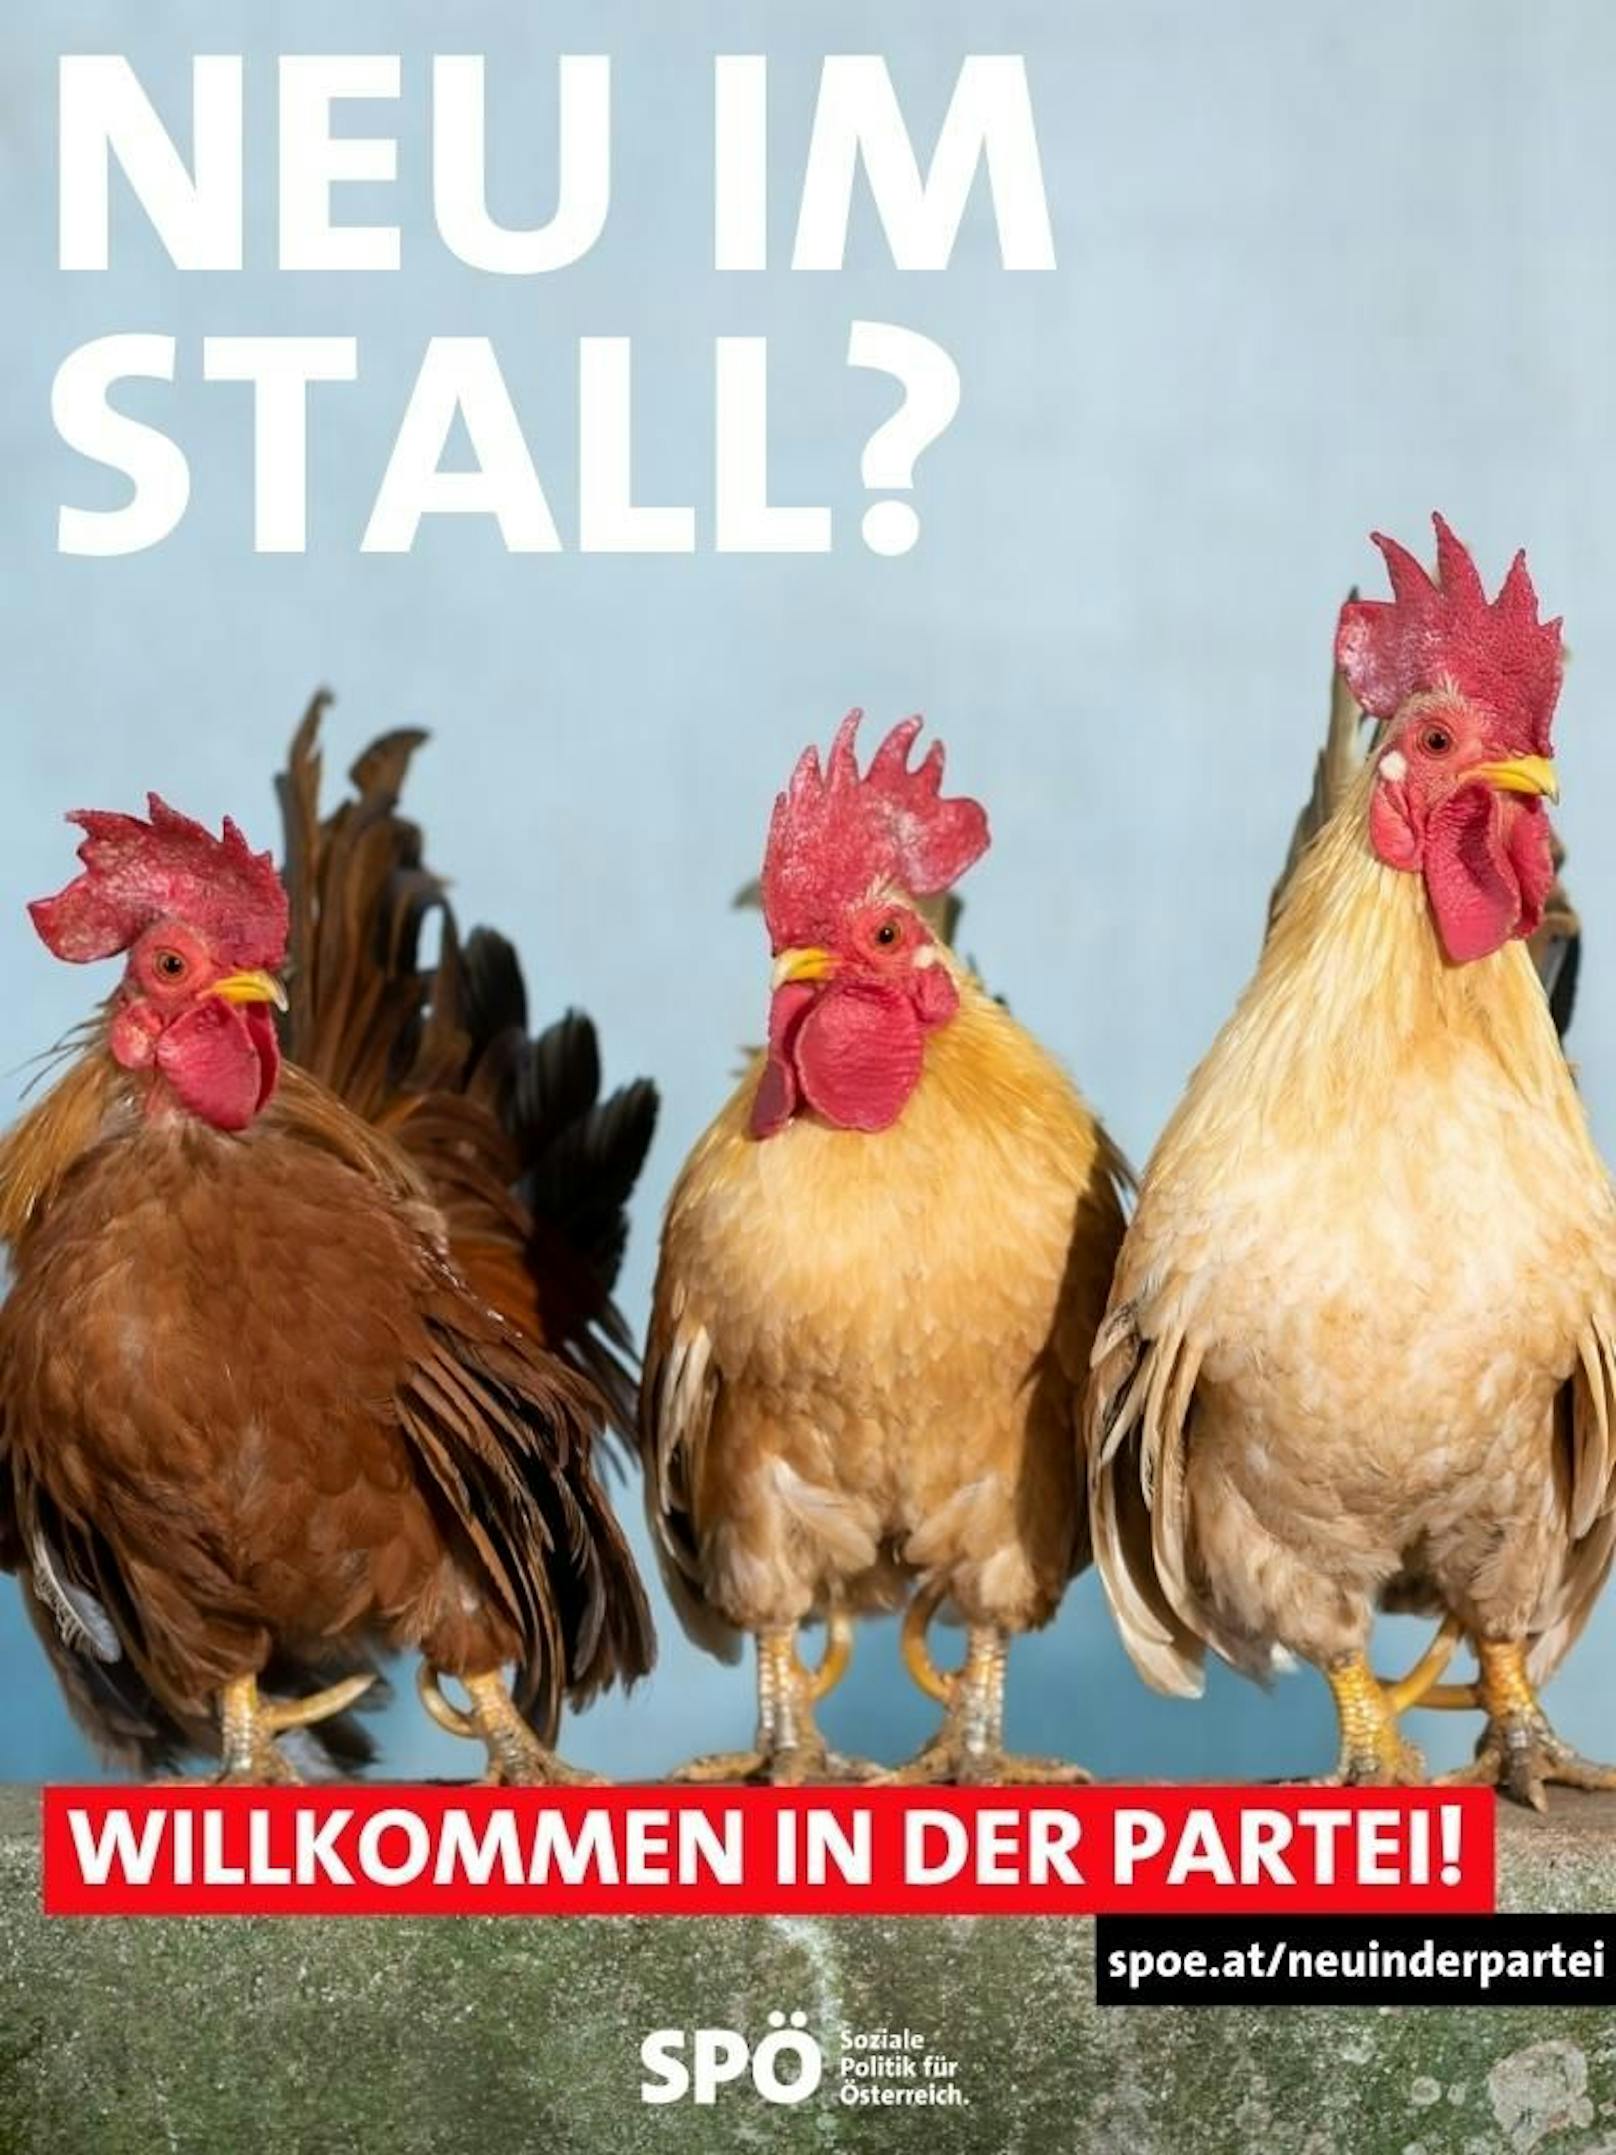 Die SPÖ ringt mit kreativen Sujets und Sprüchen verzweifelt um neue Parteimitglieder.